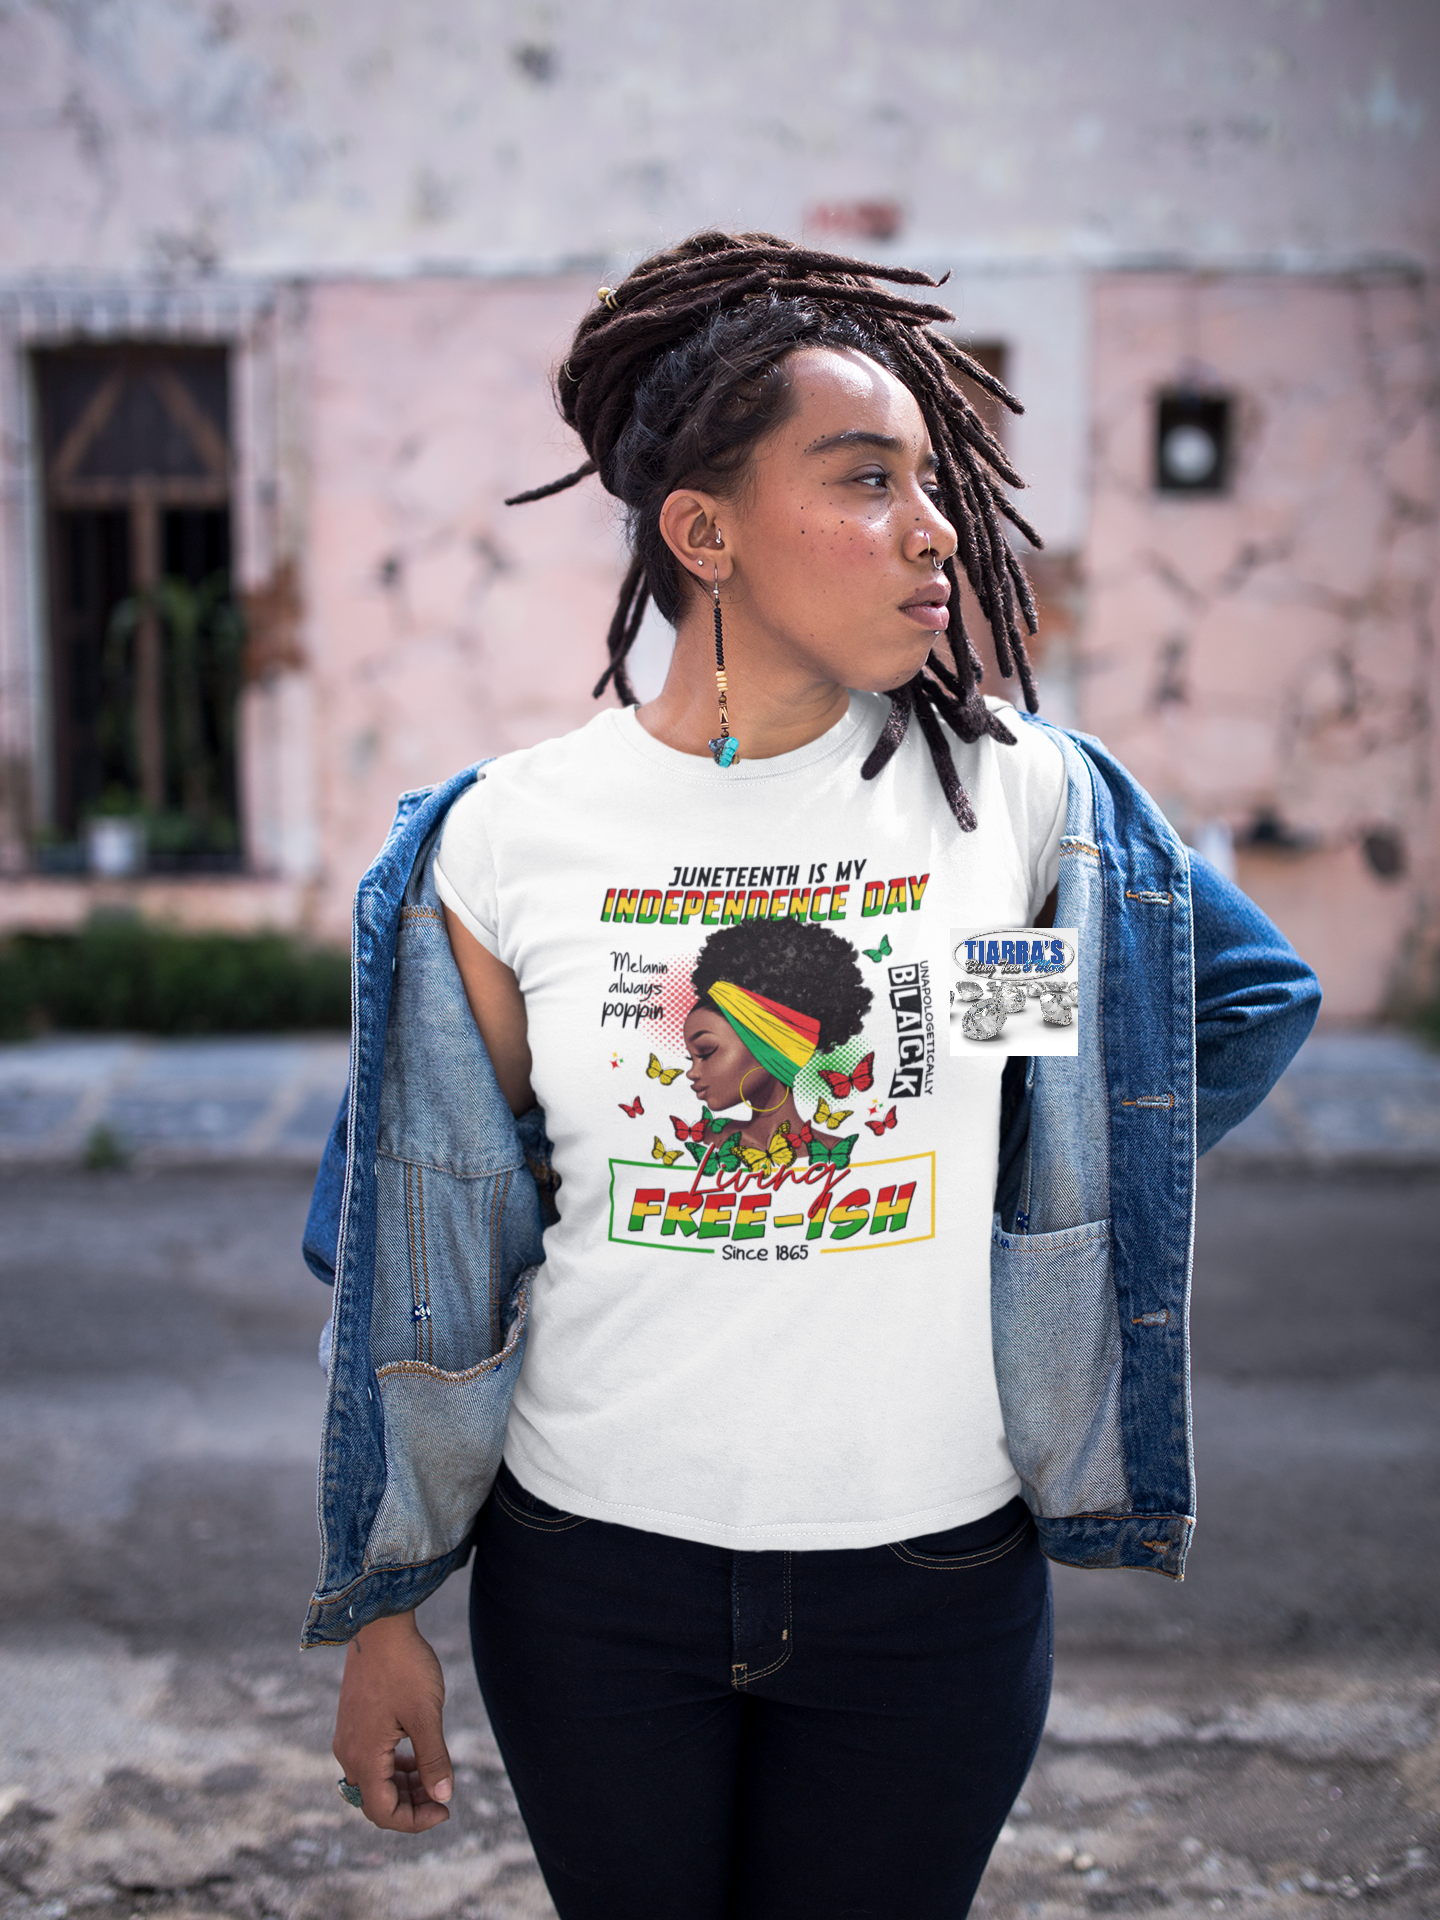 Juneteenth Afro Girl with Butterflies T-Shirt